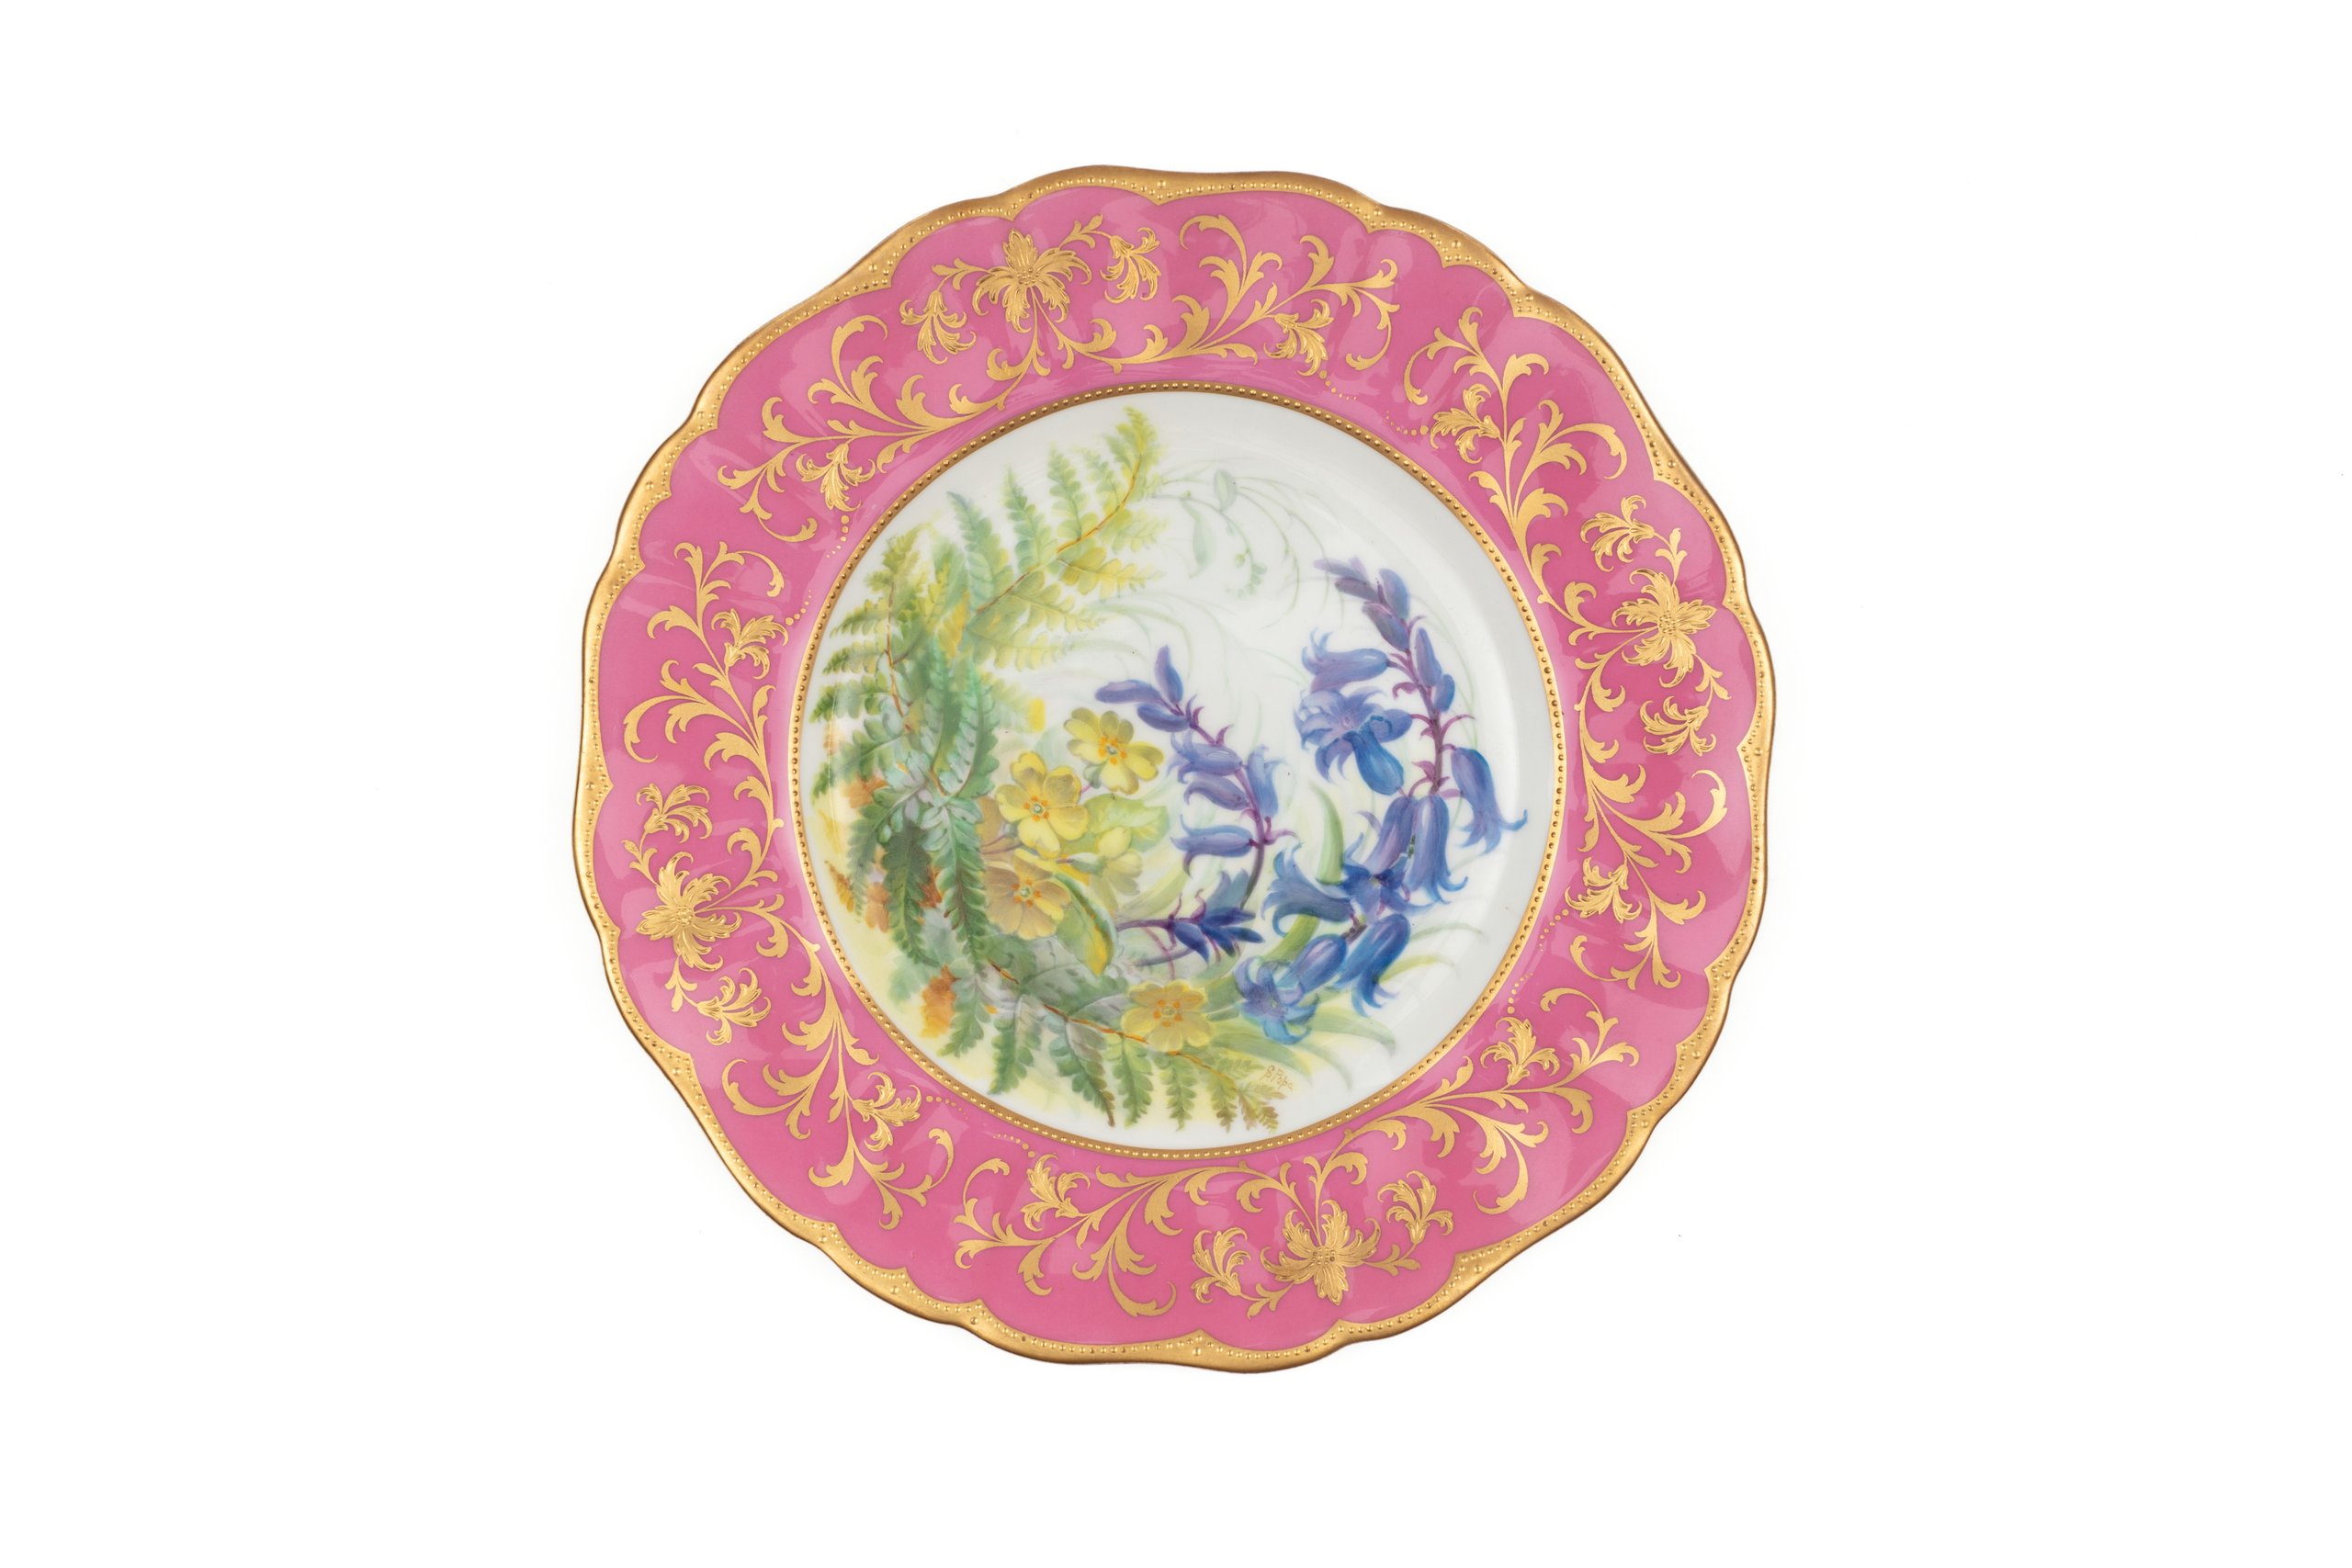 Bone china plate by Cauldon Limited